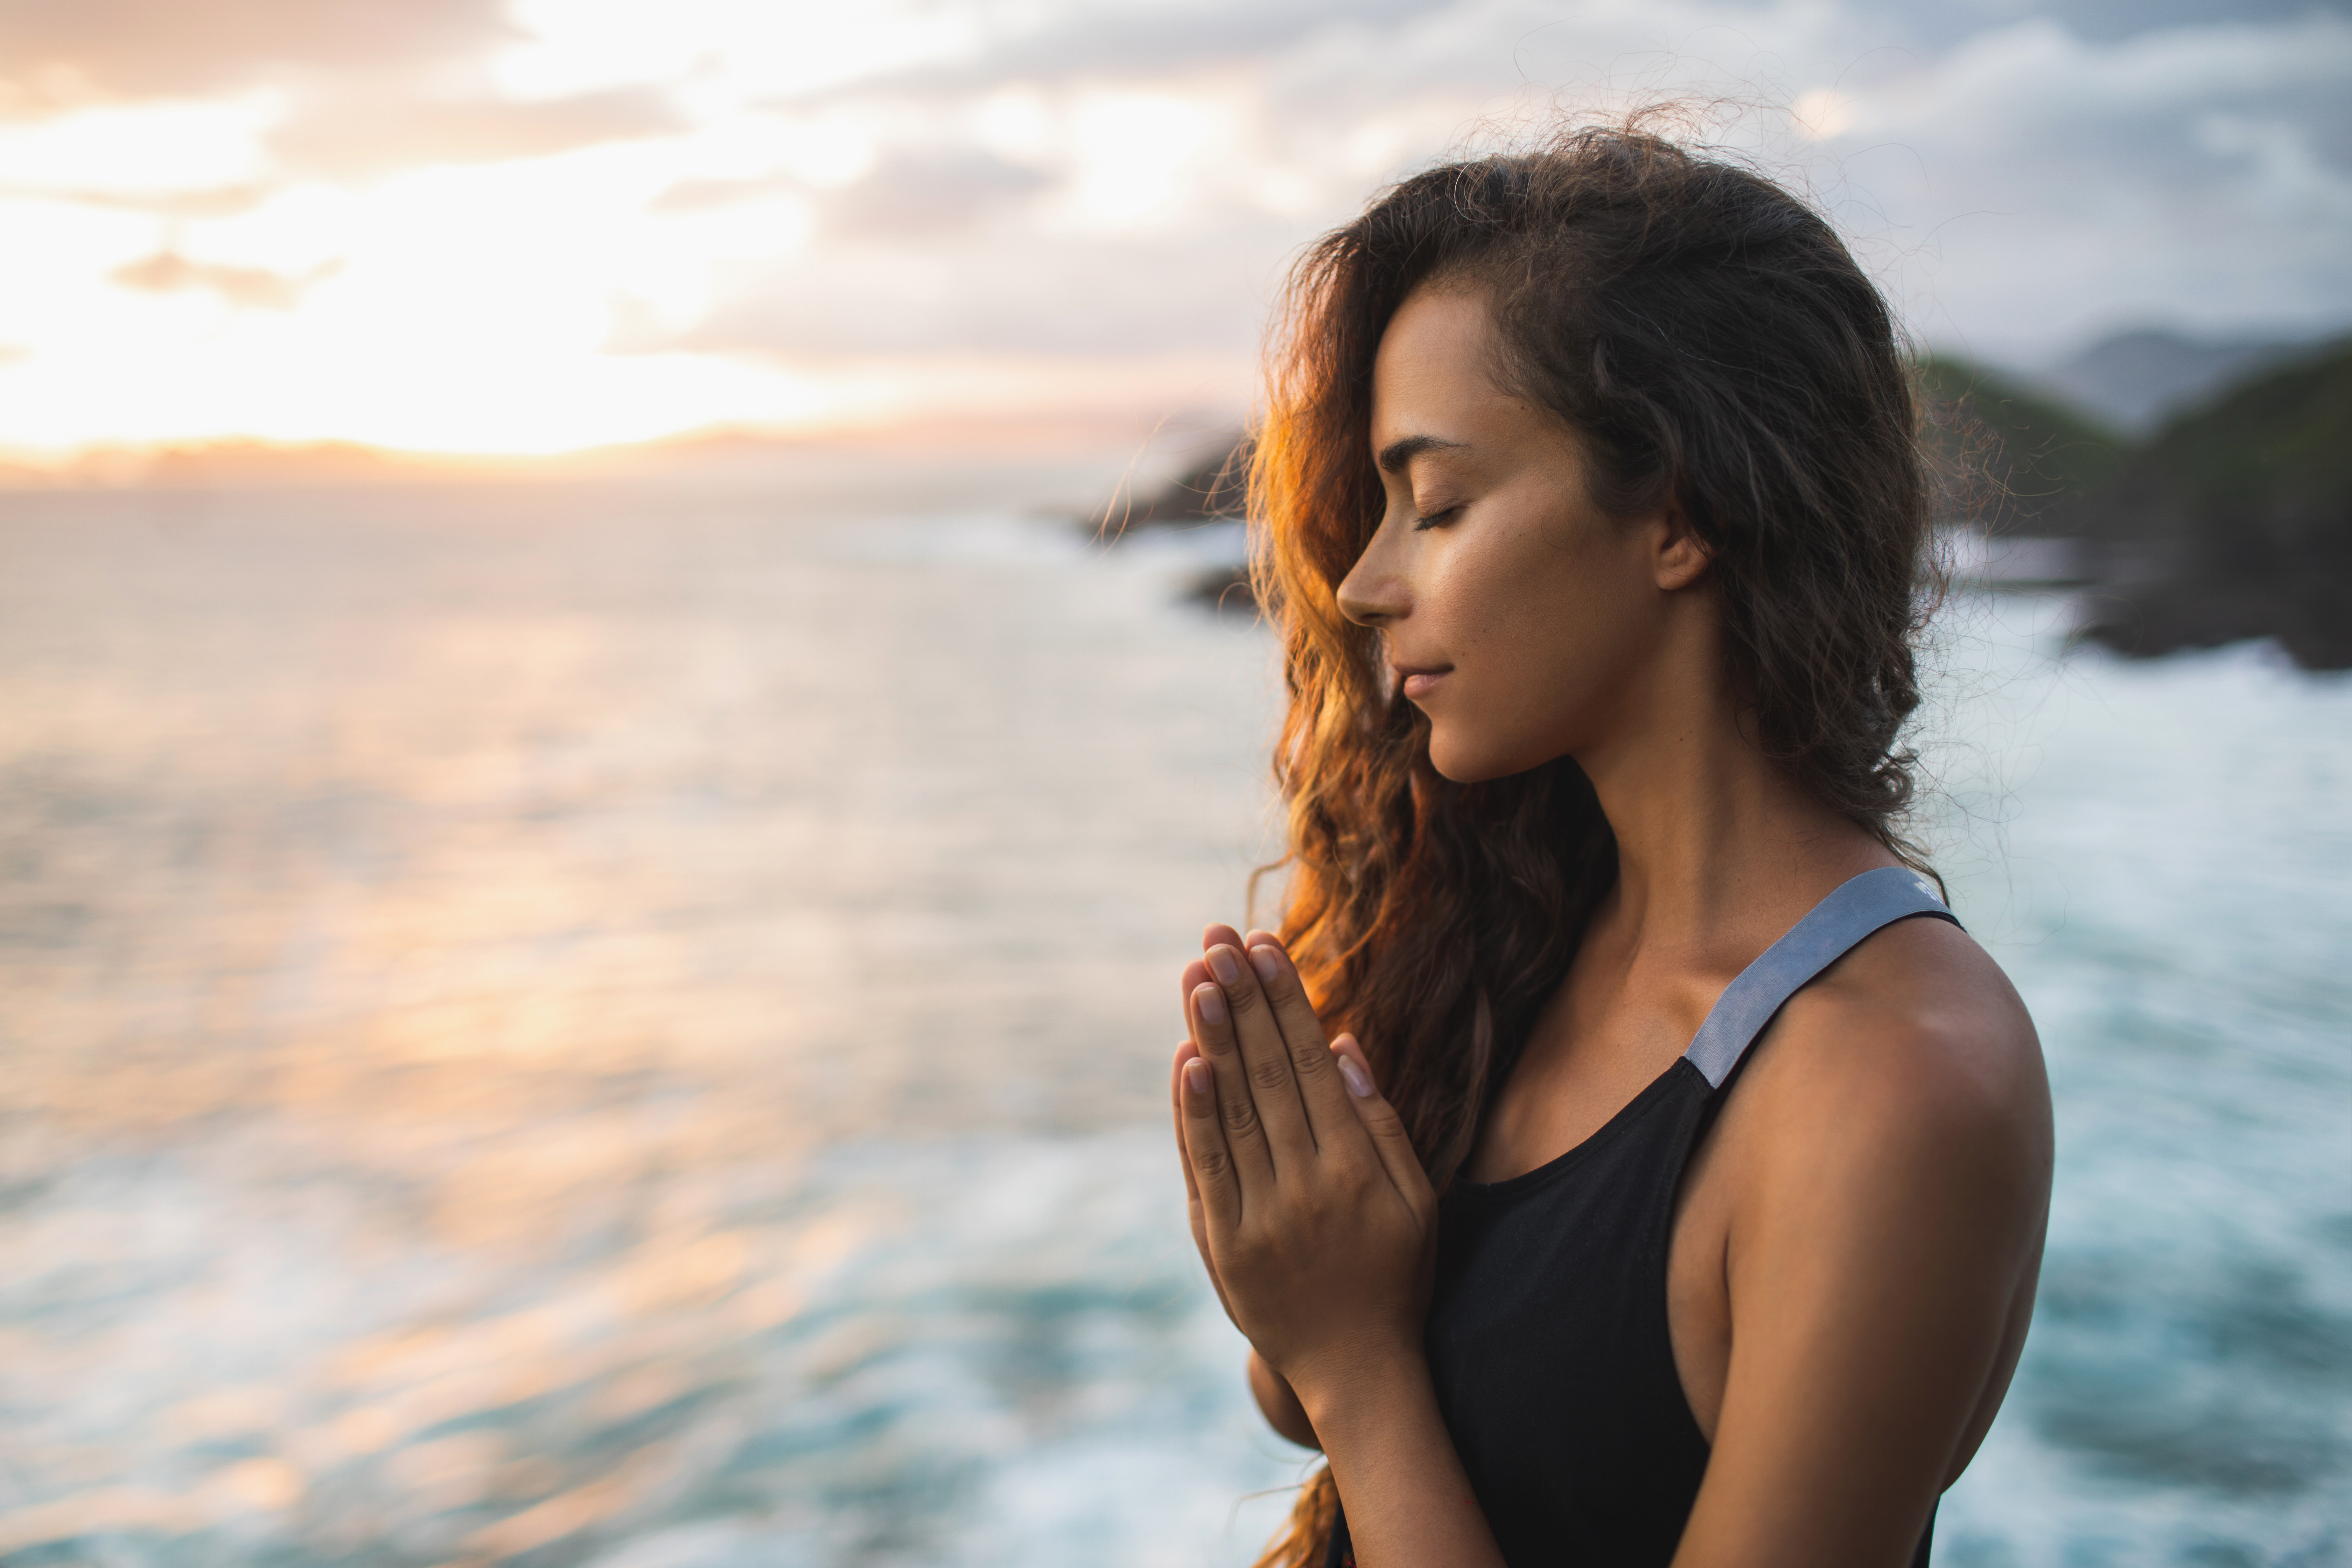 Une jeune femme en train de prier et de méditer | Source : Shutterstock